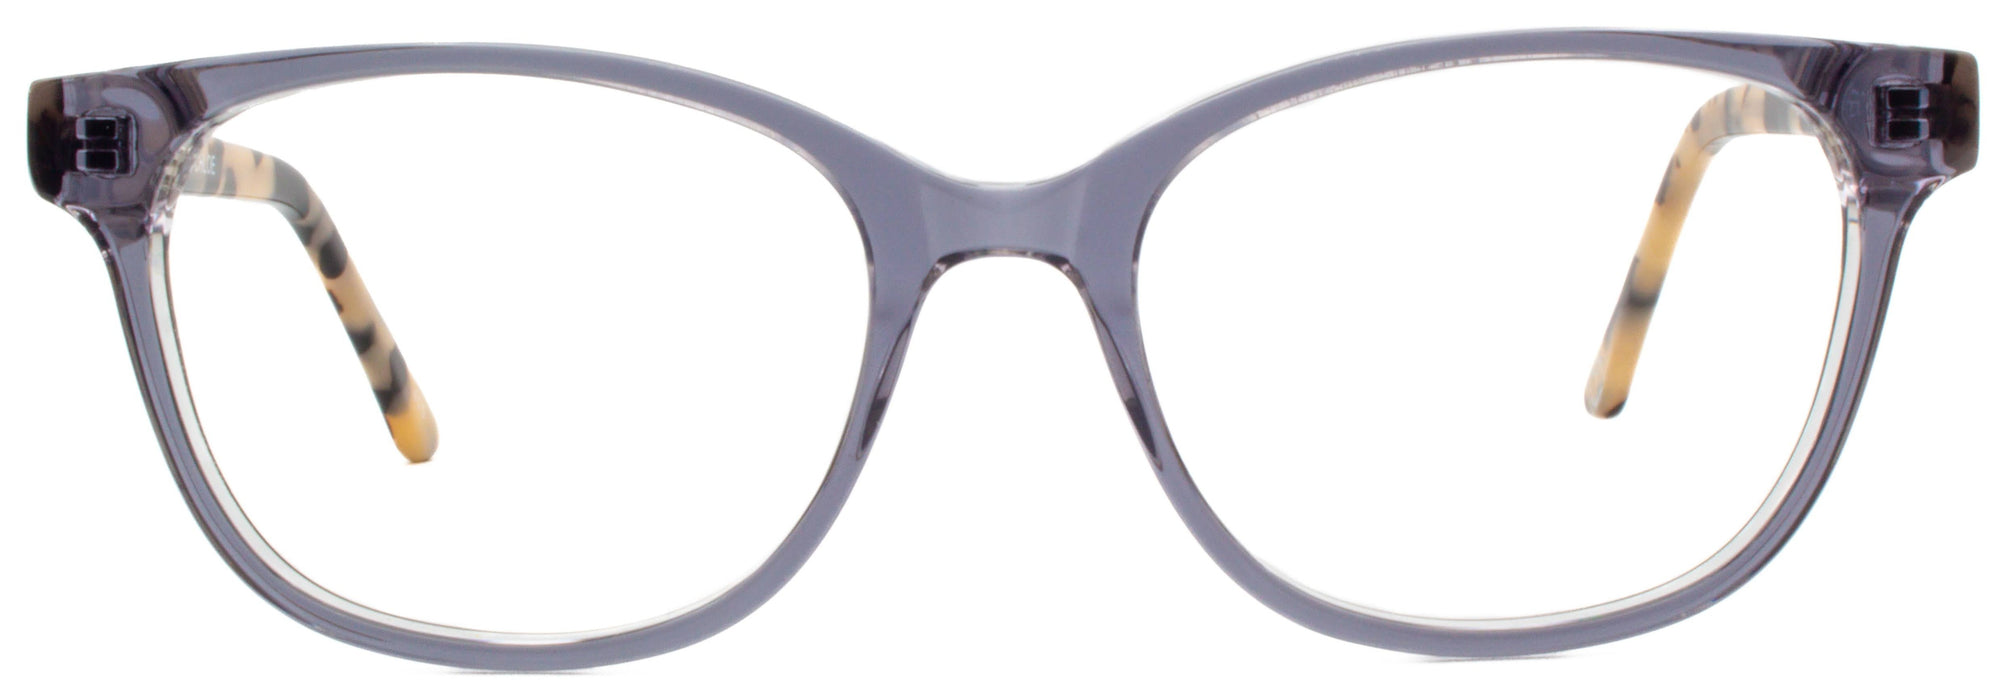 Alexander Daas - Chloe Eyeglasses - Grey Tortoise - Front View